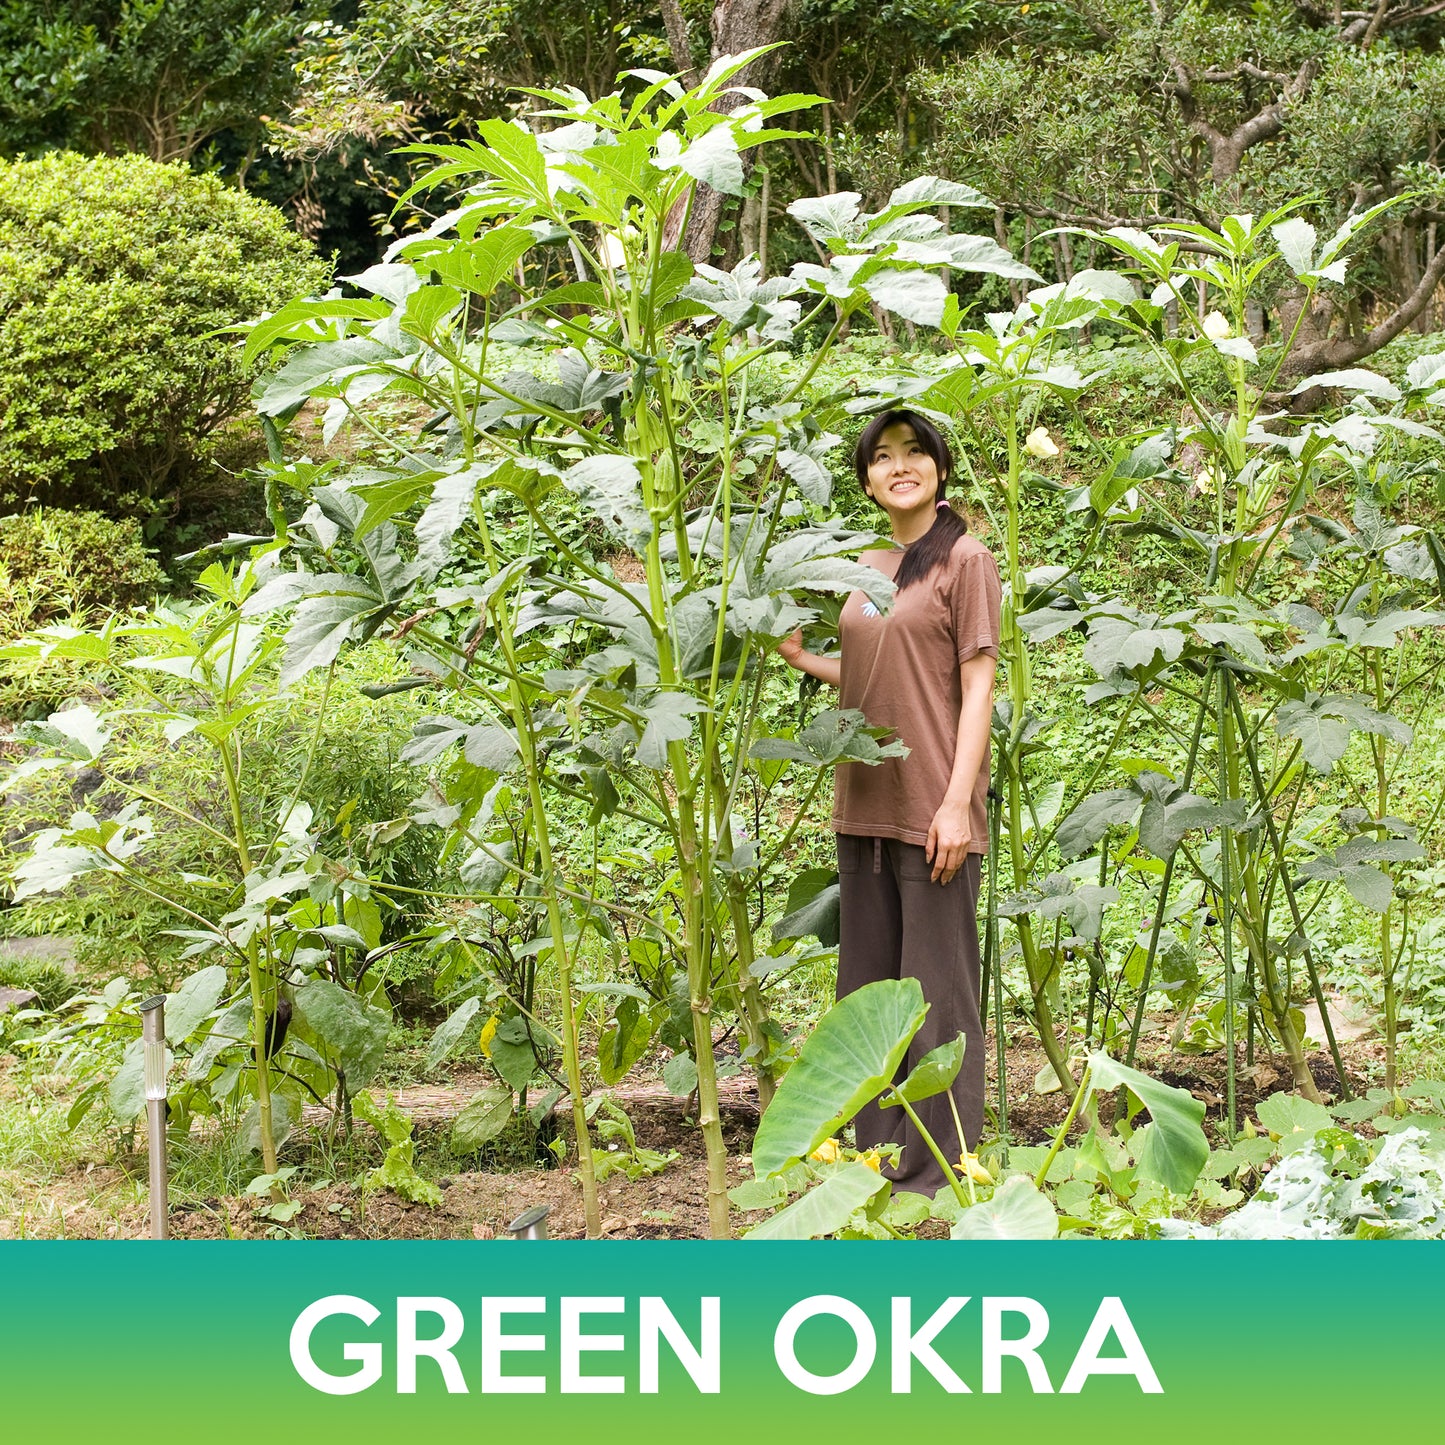 Green Okra Seeds, Clemson Spineless 80 Okra Seeds